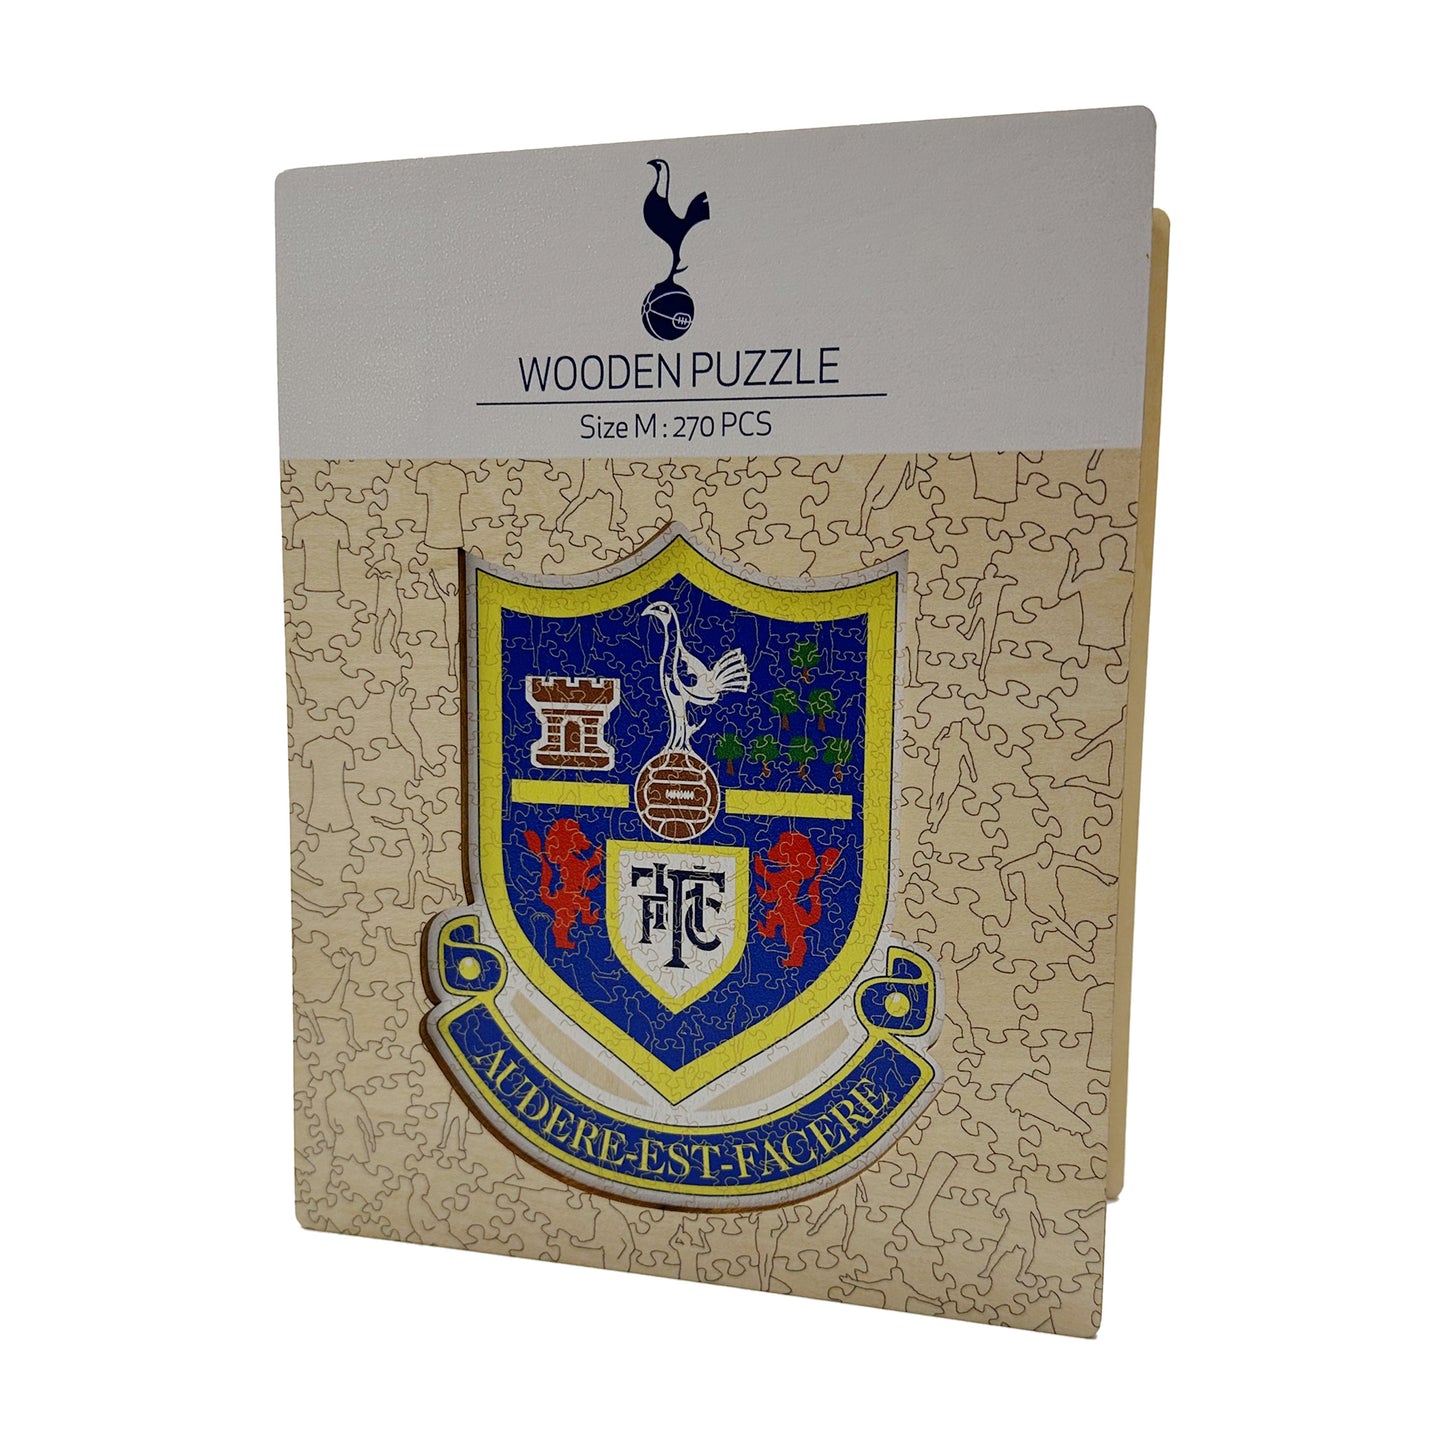 2 PACK Tottenham Hotspur FC® Crest + Retro Crest